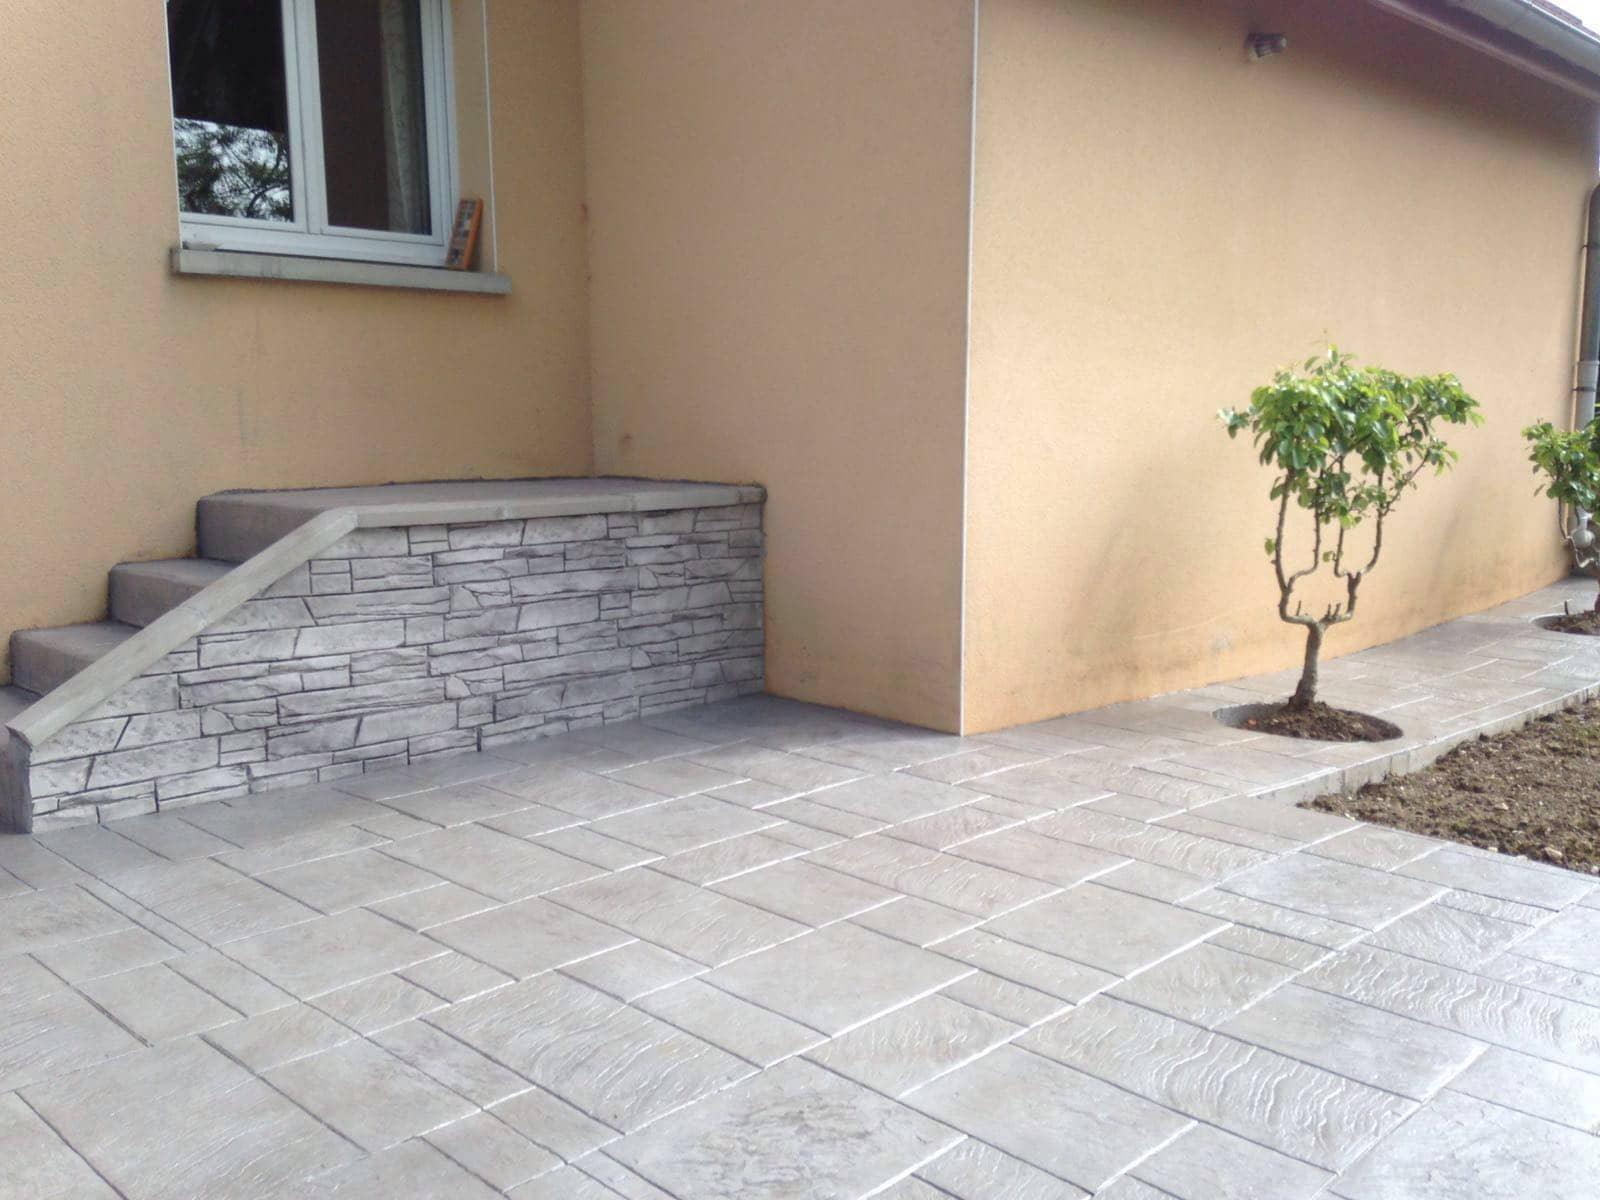 Lateral de vivienda con molde de concreto en el suelo